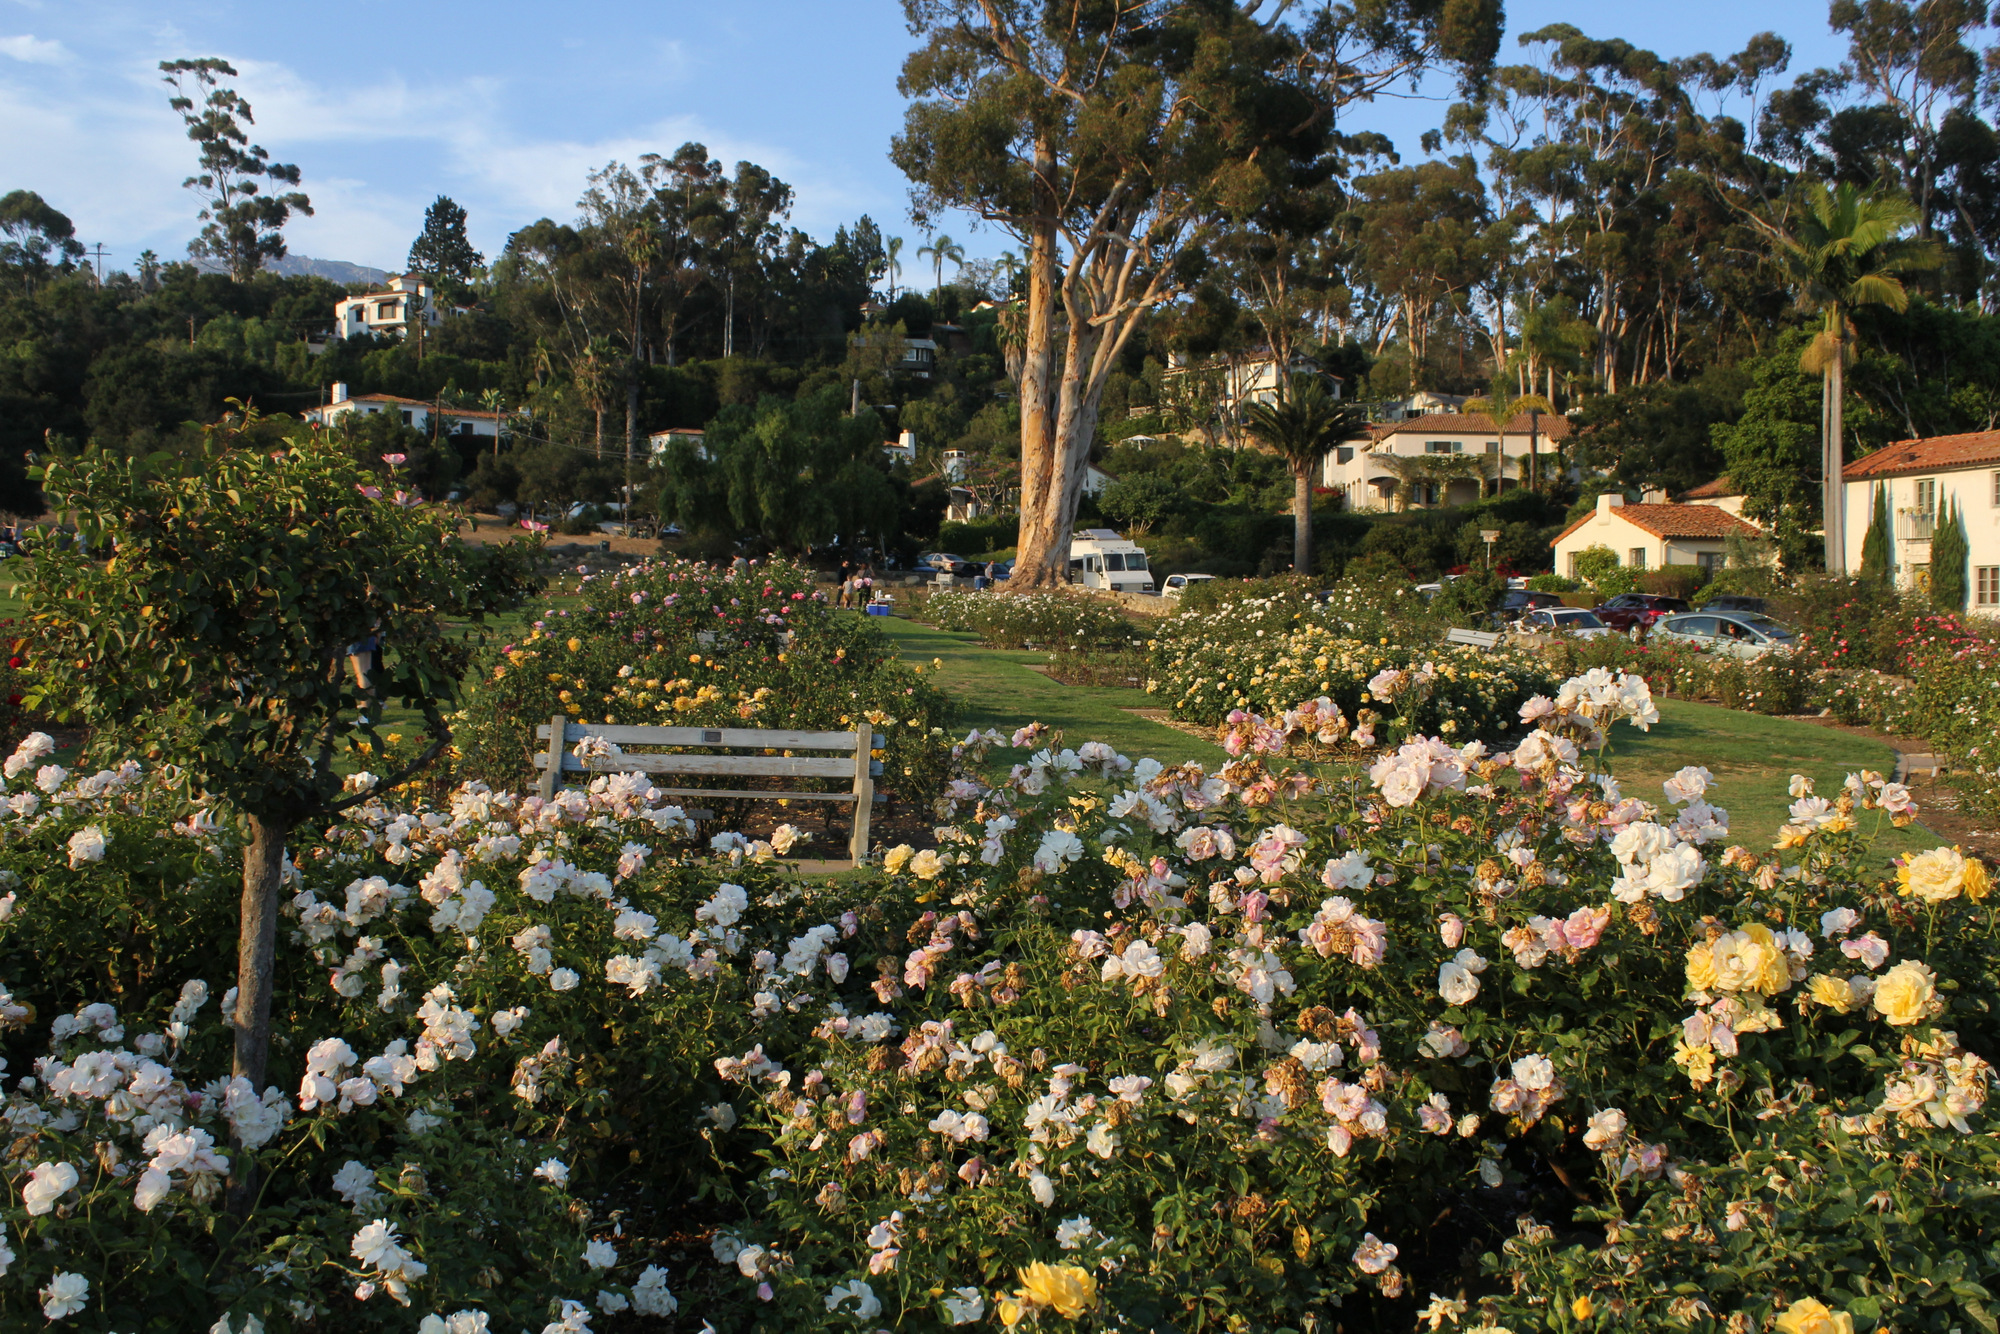 Mission Park and Rose Garden - Santa Barbara Parks